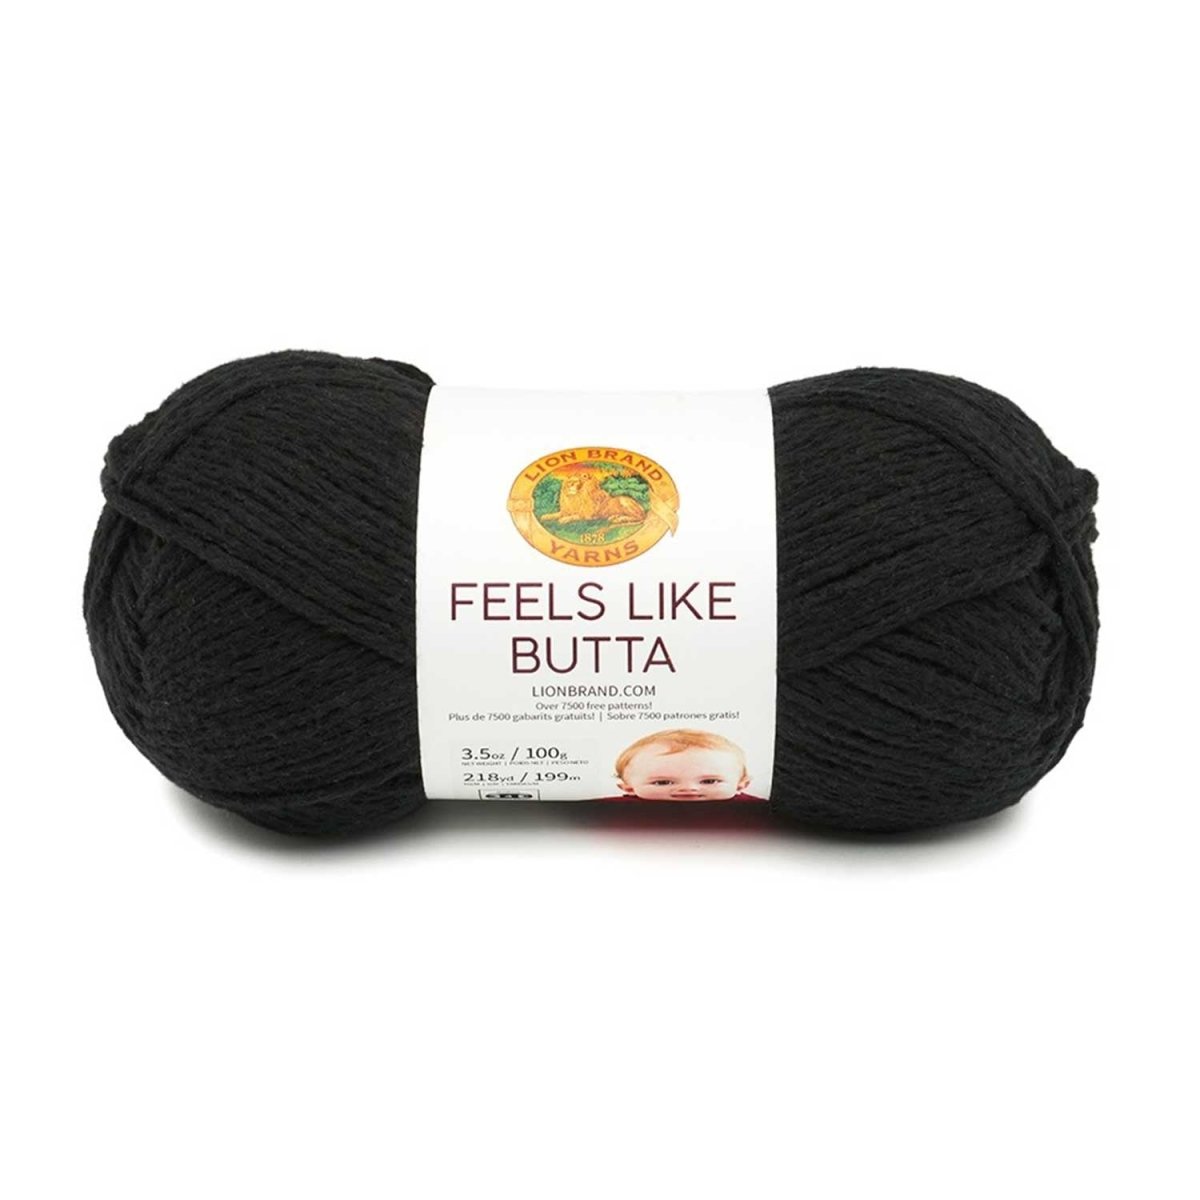 FEELS LIKE BUTTA - Crochetstores215-153